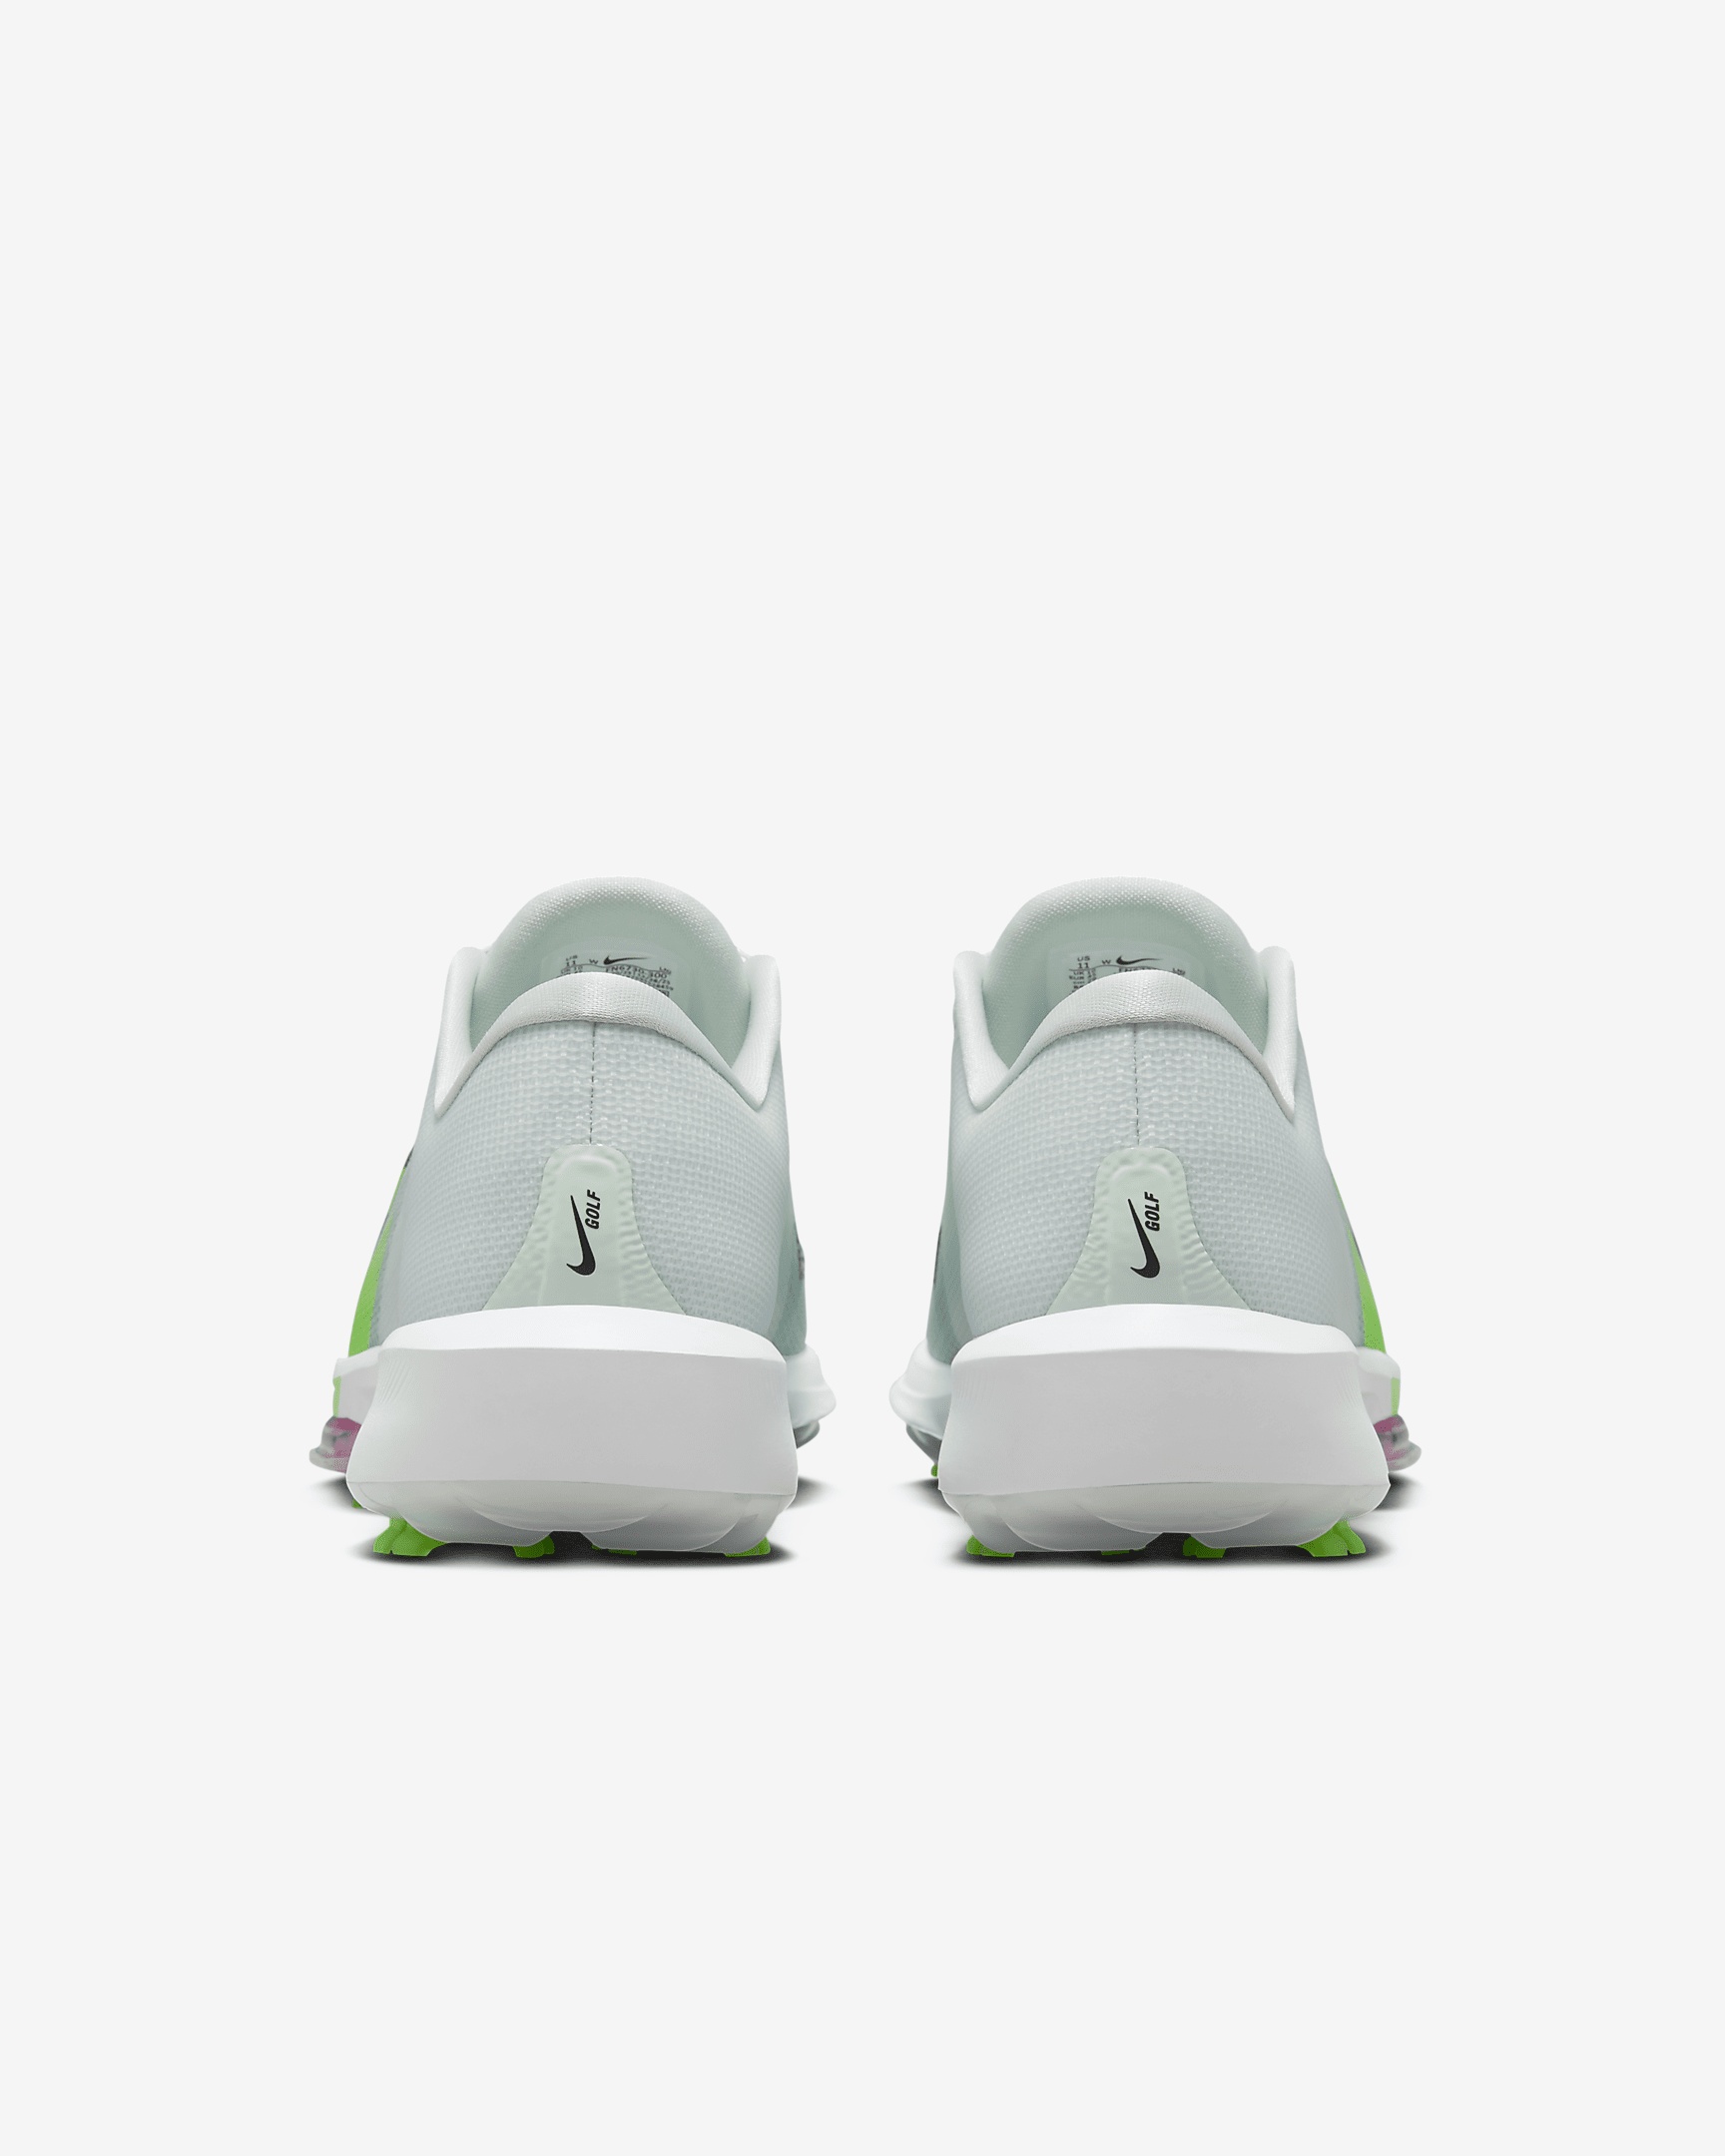 Nike Infinity Tour BOA 2 Golf Shoes (Wide) - 6